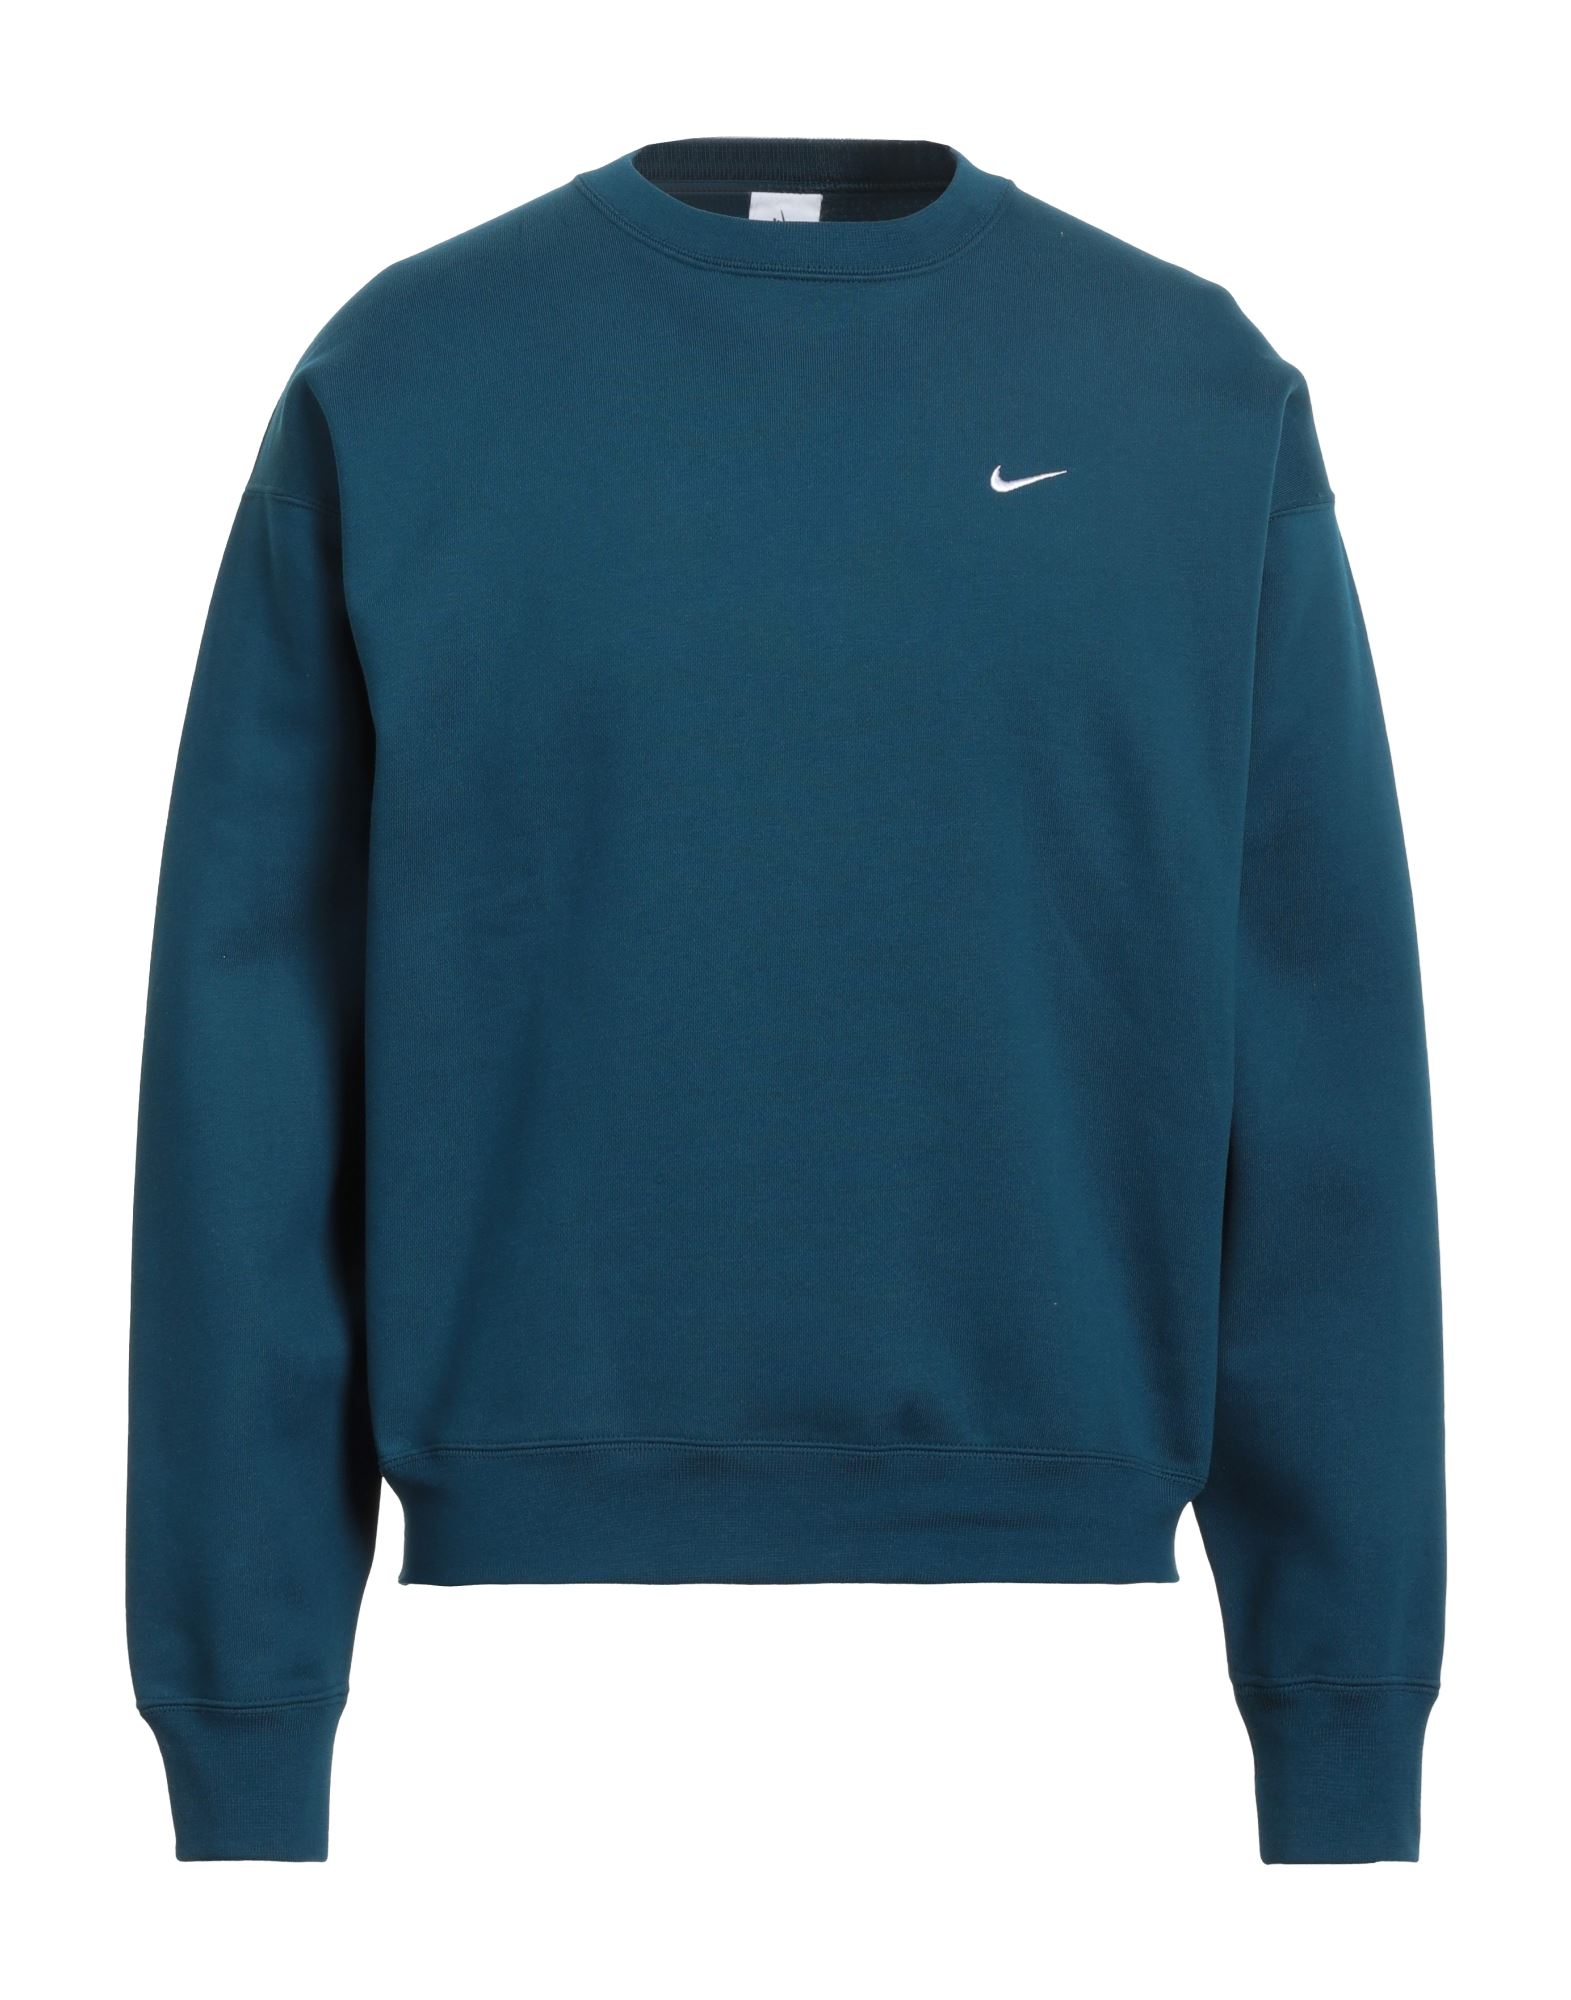 Nike Sweatshirts In Green